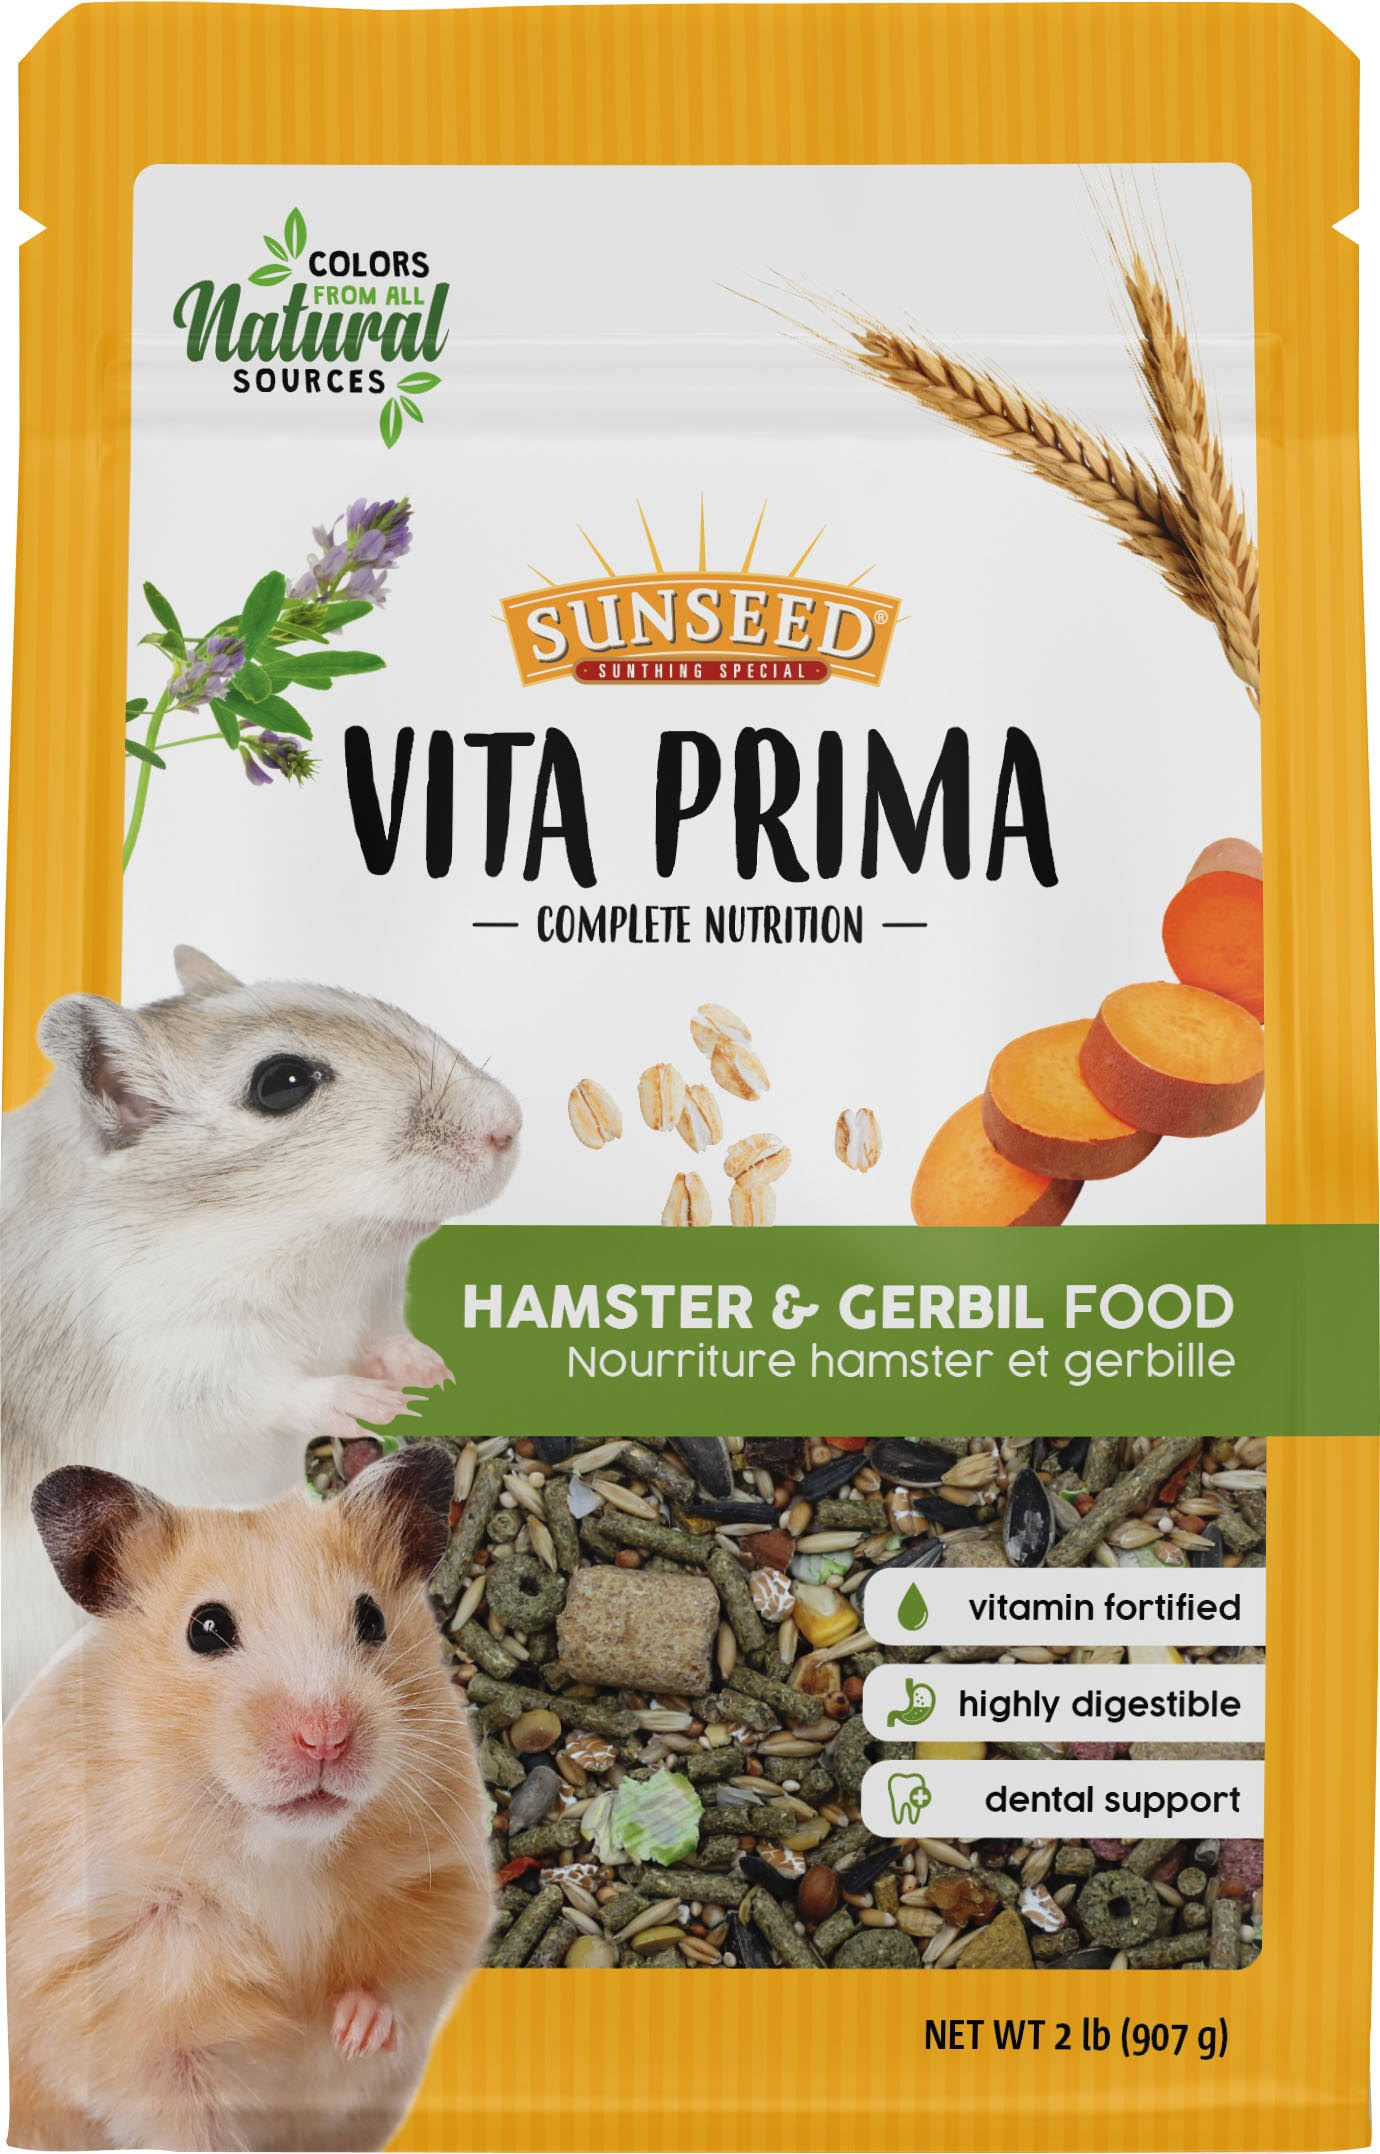 Sunseed Vita Prima Hamster & Gerbil Food 2 lbs